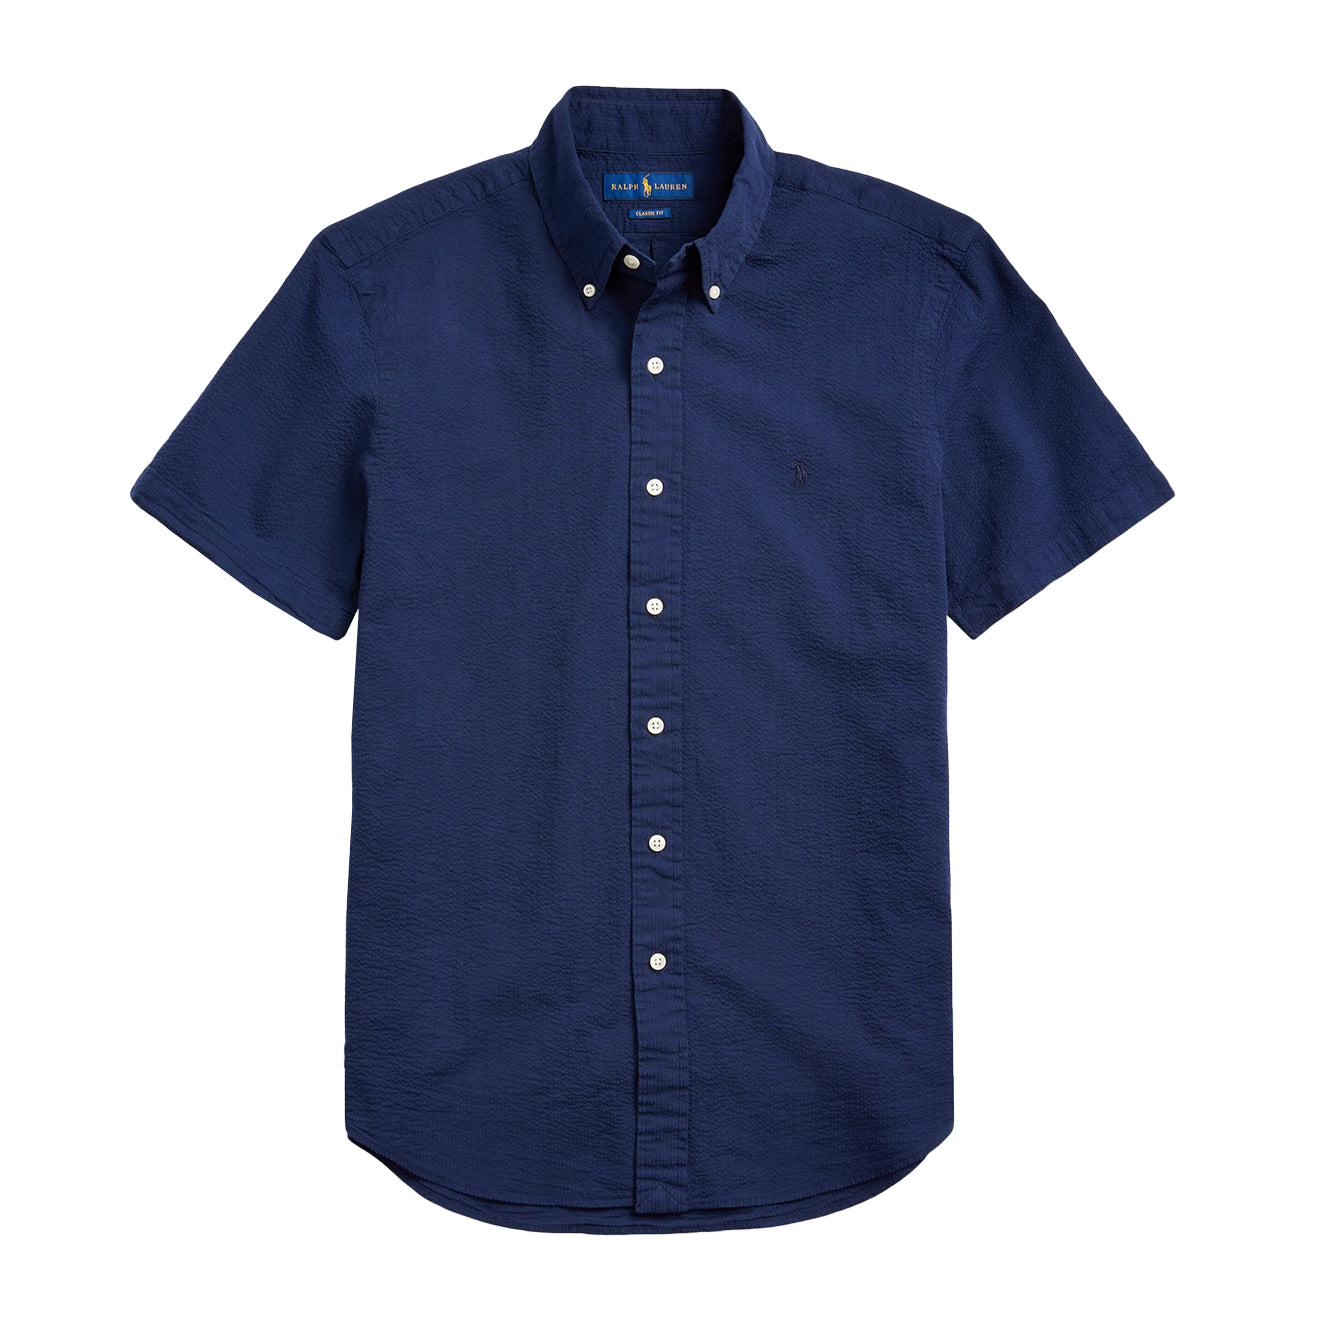 Polo Ralph Lauren S/S Seersucker Slim Fit Shirt Astoria Navy | The ...